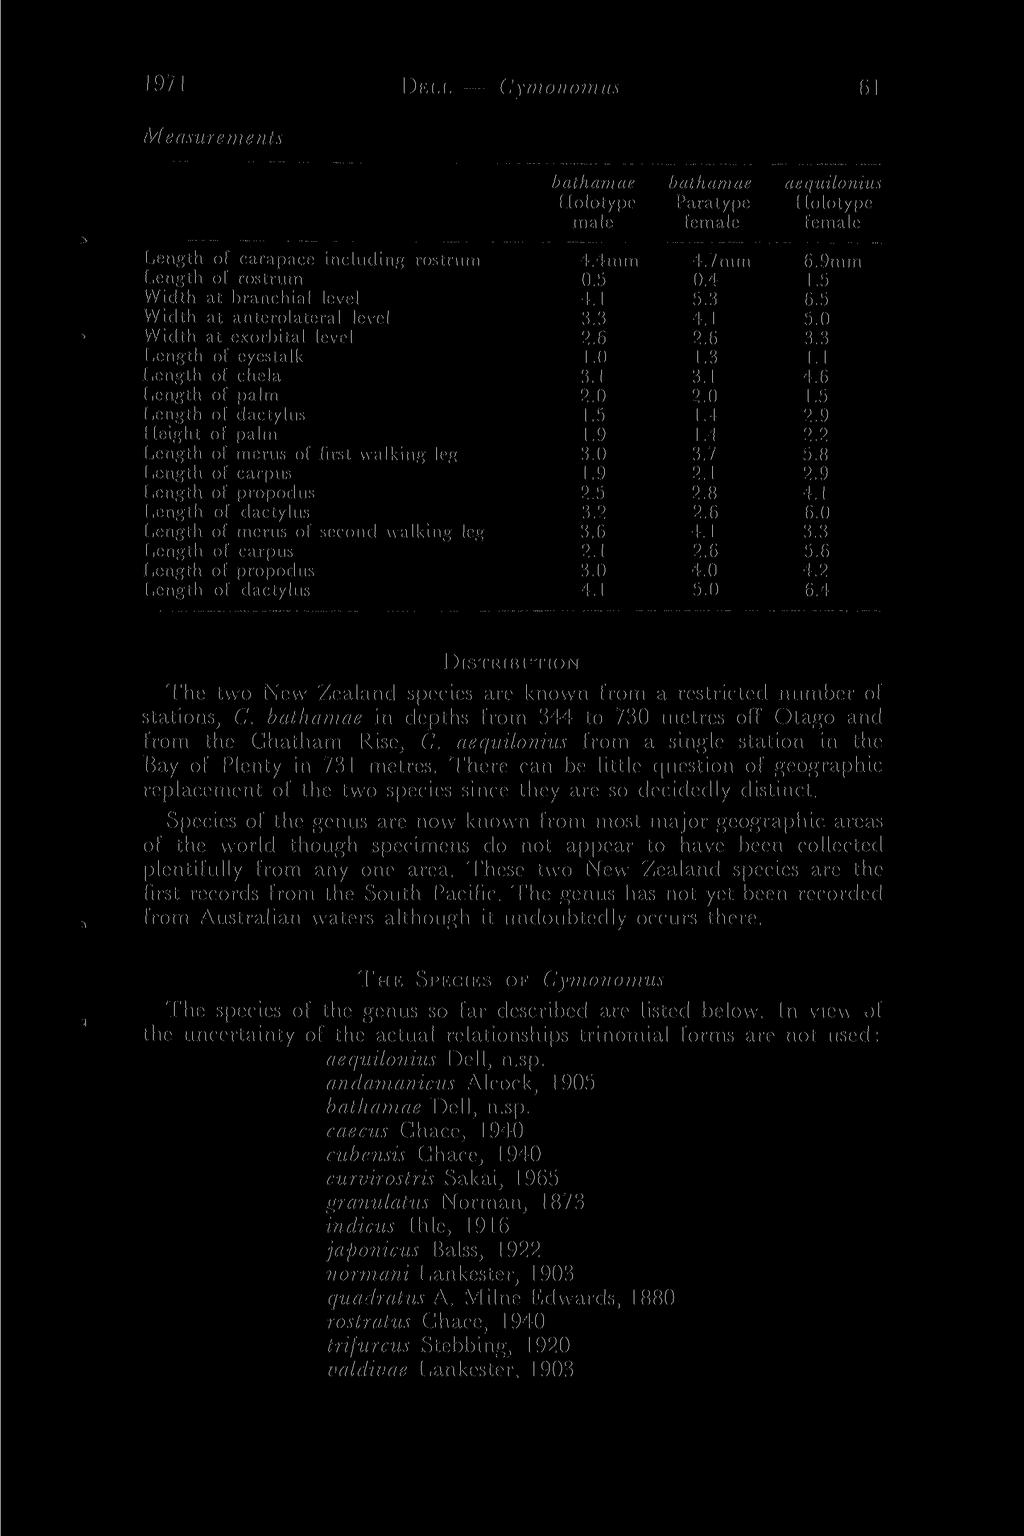 1971 DEI.I. - Cymonomus 61 Measurements bathamae bathamae aequiloniu. Holotype Paratype Holotype male female female Length of carapace including rostrum 4.4mm 4.7mm 6.9mm Length of rostrum 0.5 0.4 1.